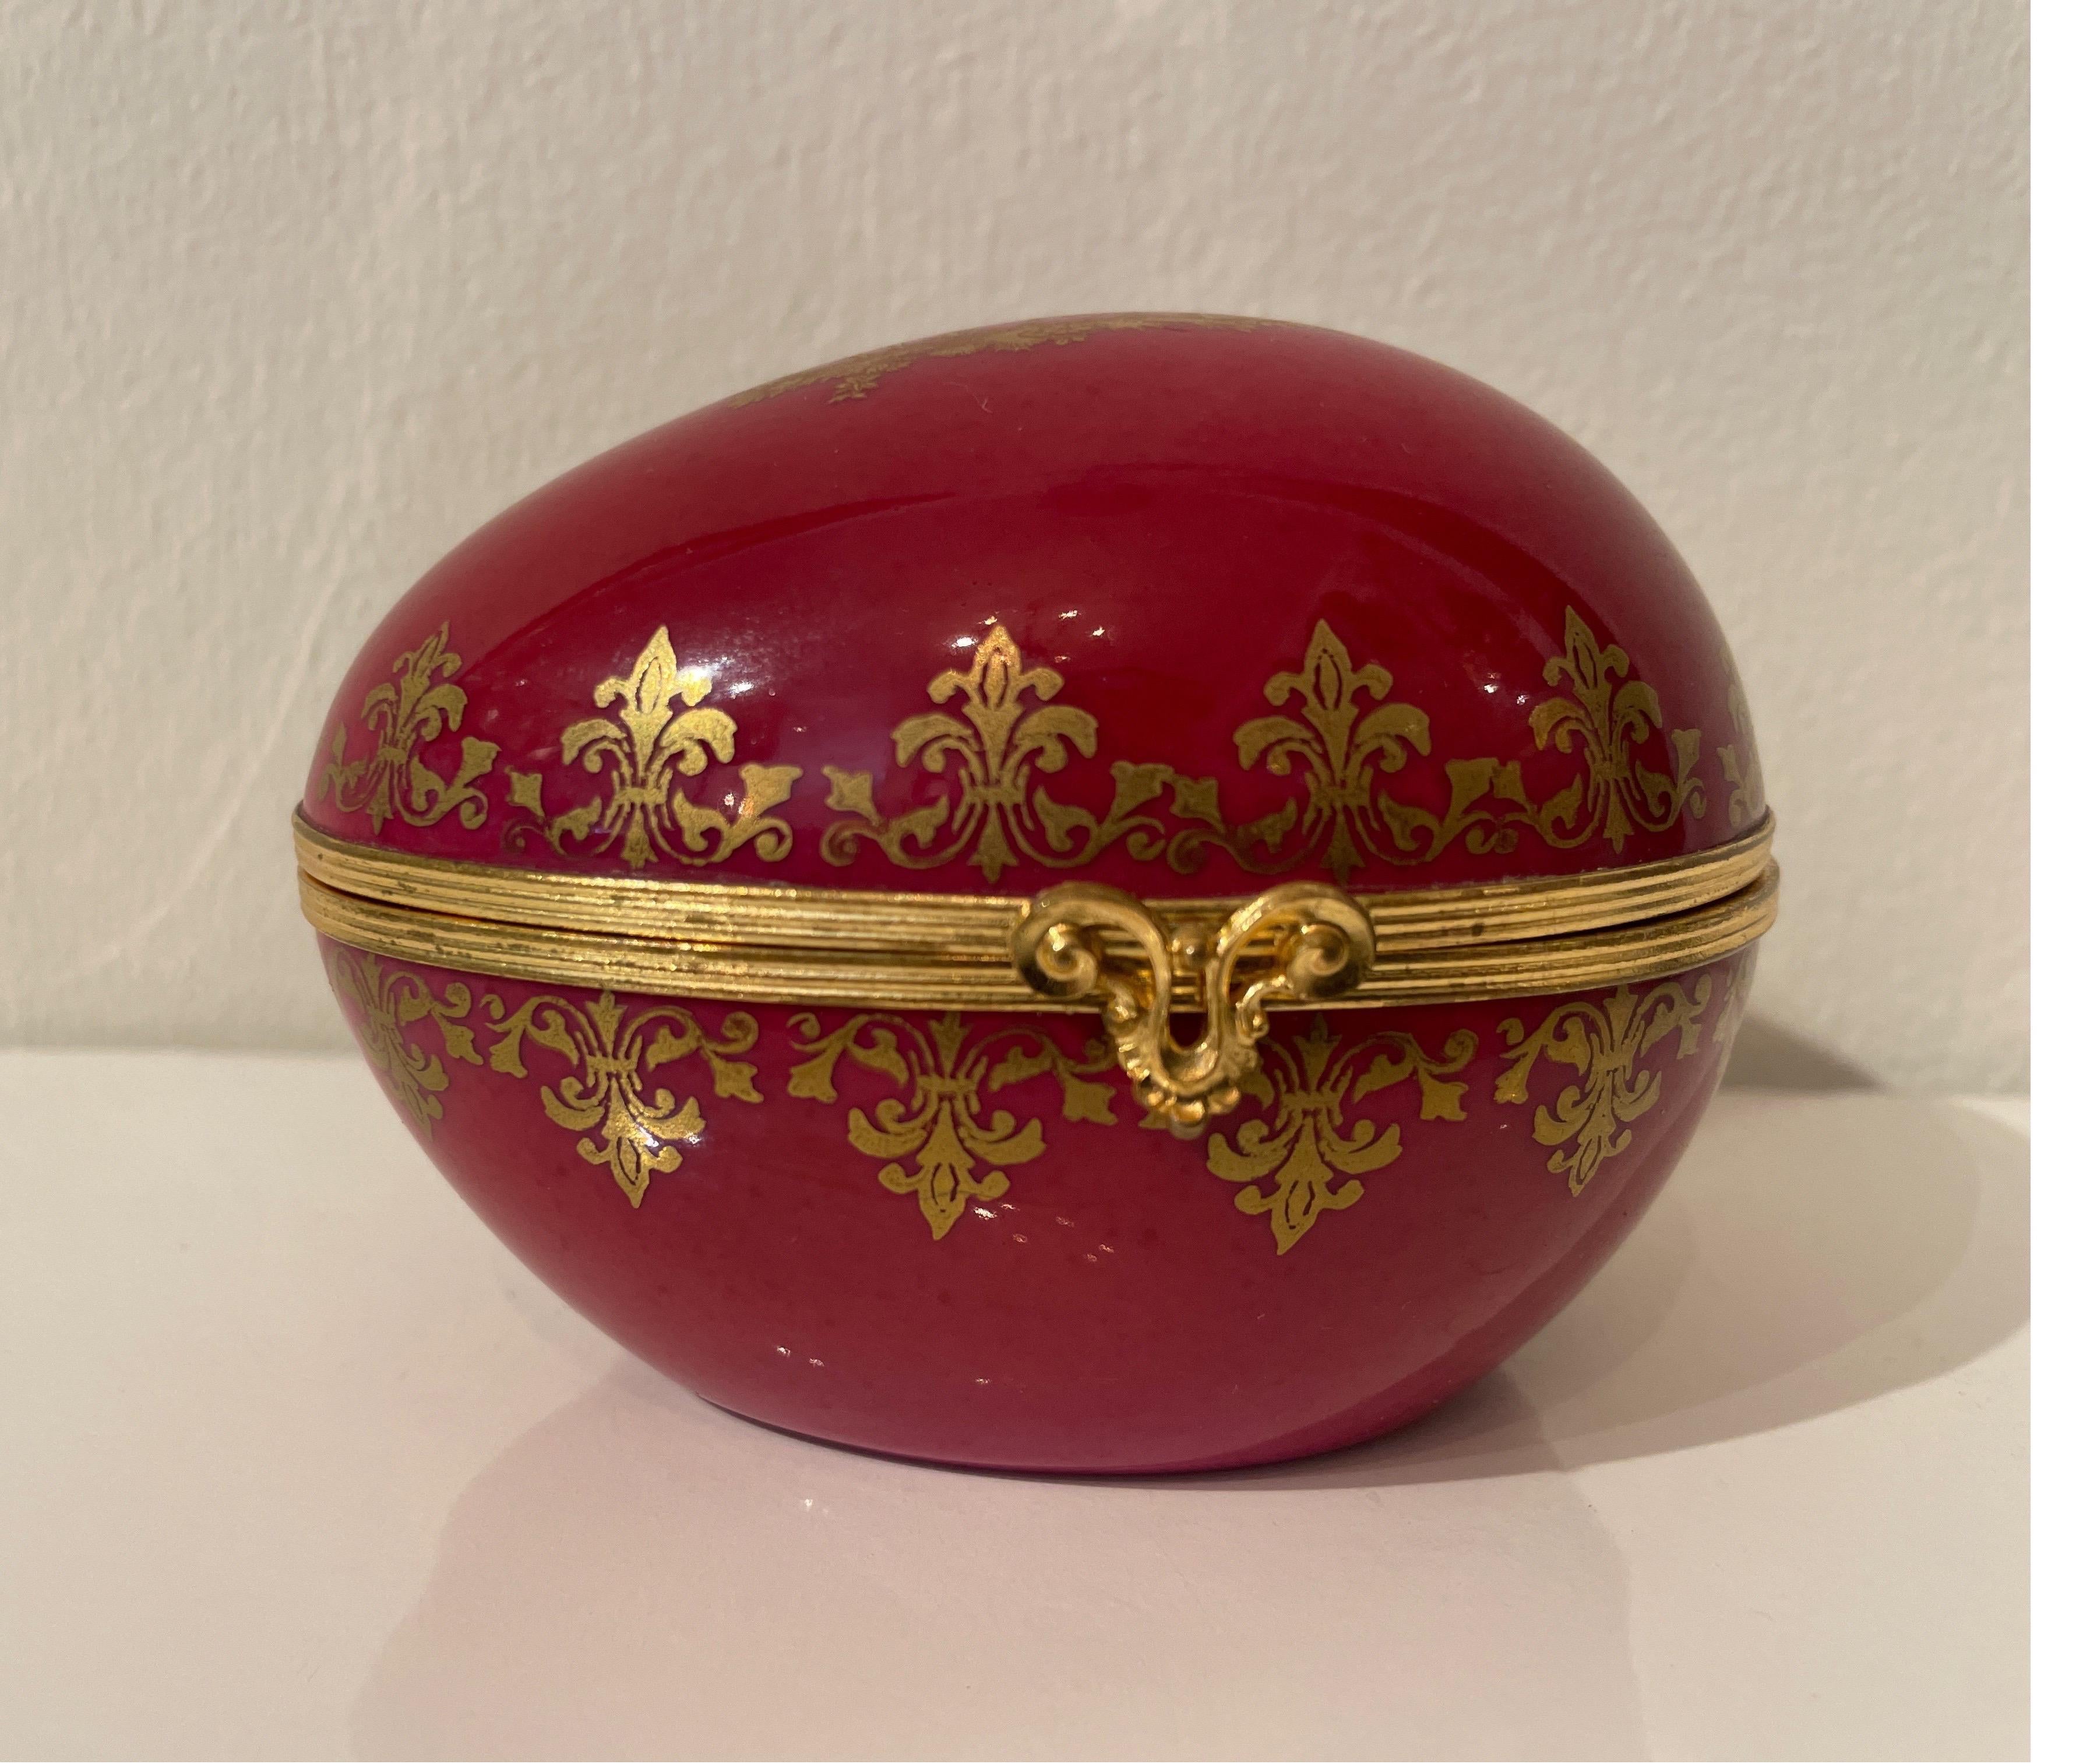 Grande boîte à Limoges en porcelaine peinte à la main en forme d'œuf. Garniture en bronze doré. L'œuf est peint dans une riche couleur bordeaux avec des accents dorés.